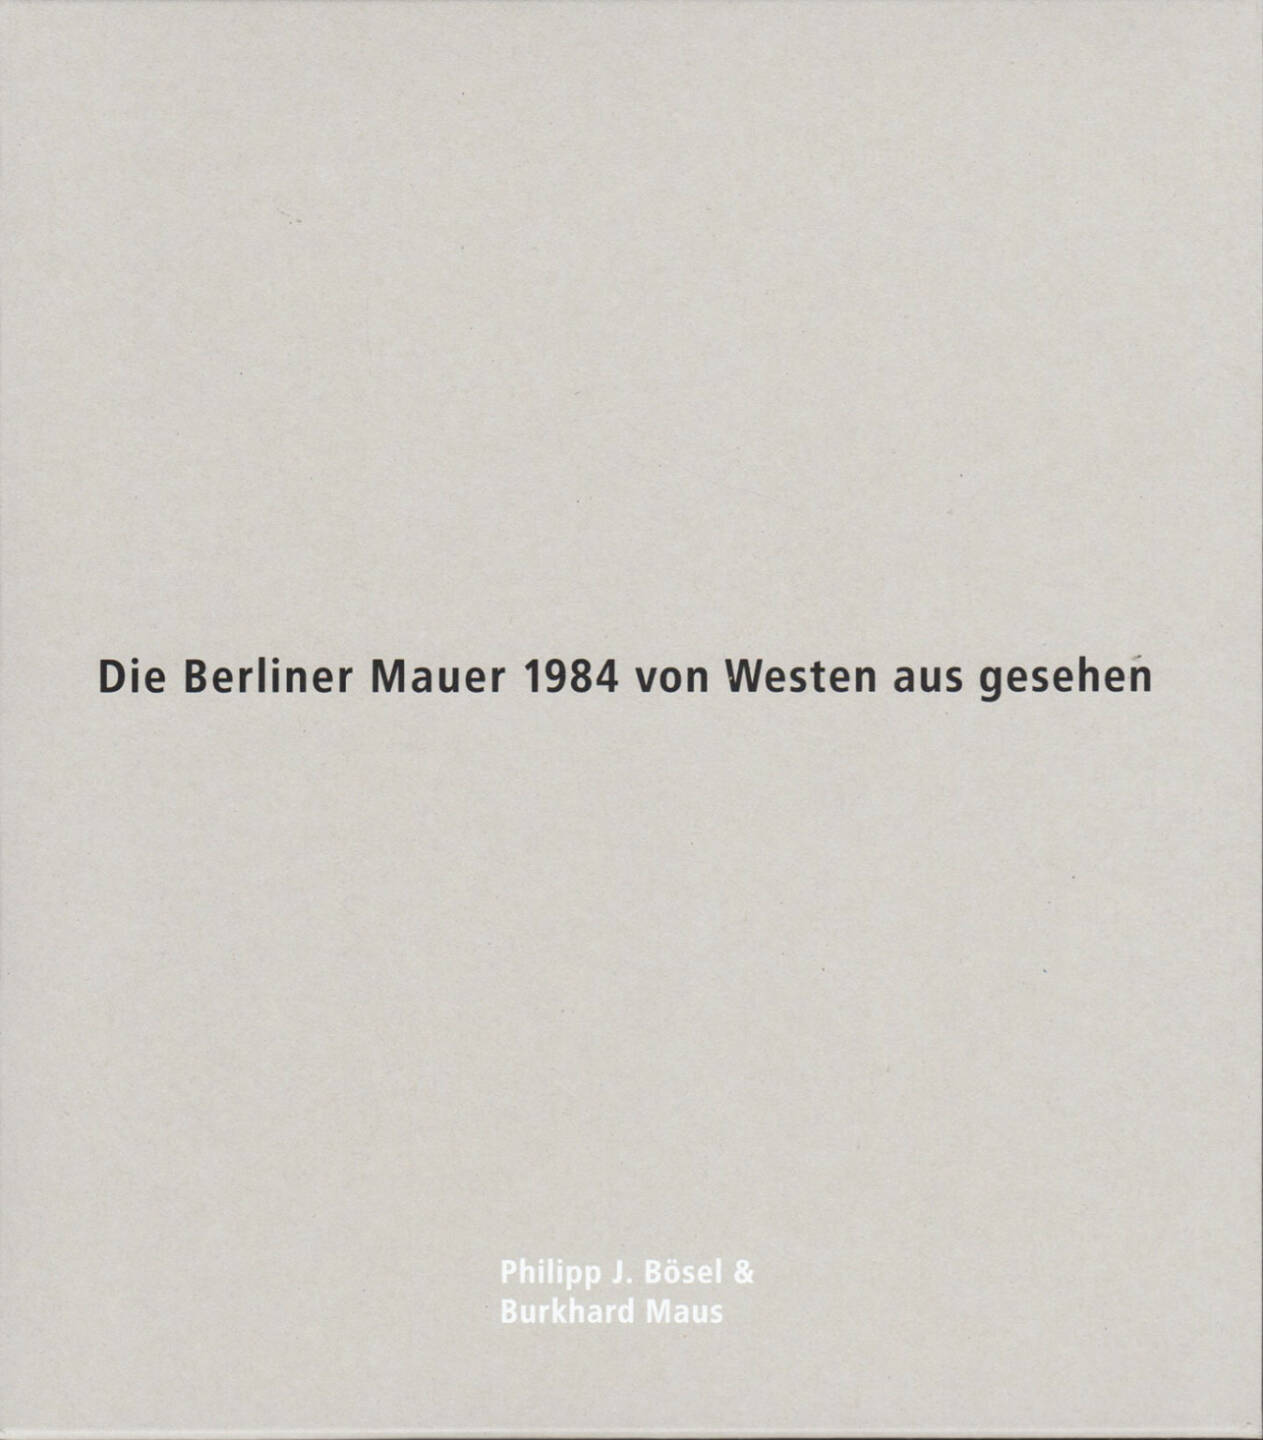 Philipp J. Bösel and Burkhard Maus - Die Berliner Mauer 1984 von Westen aus gesehen, White-Press/Verlag Kettler 2014, Cover - http://josefchladek.com/book/philipp_j_bosel_and_burkhard_maus_-_die_berliner_mauer_1984_von_westen_aus_gesehen